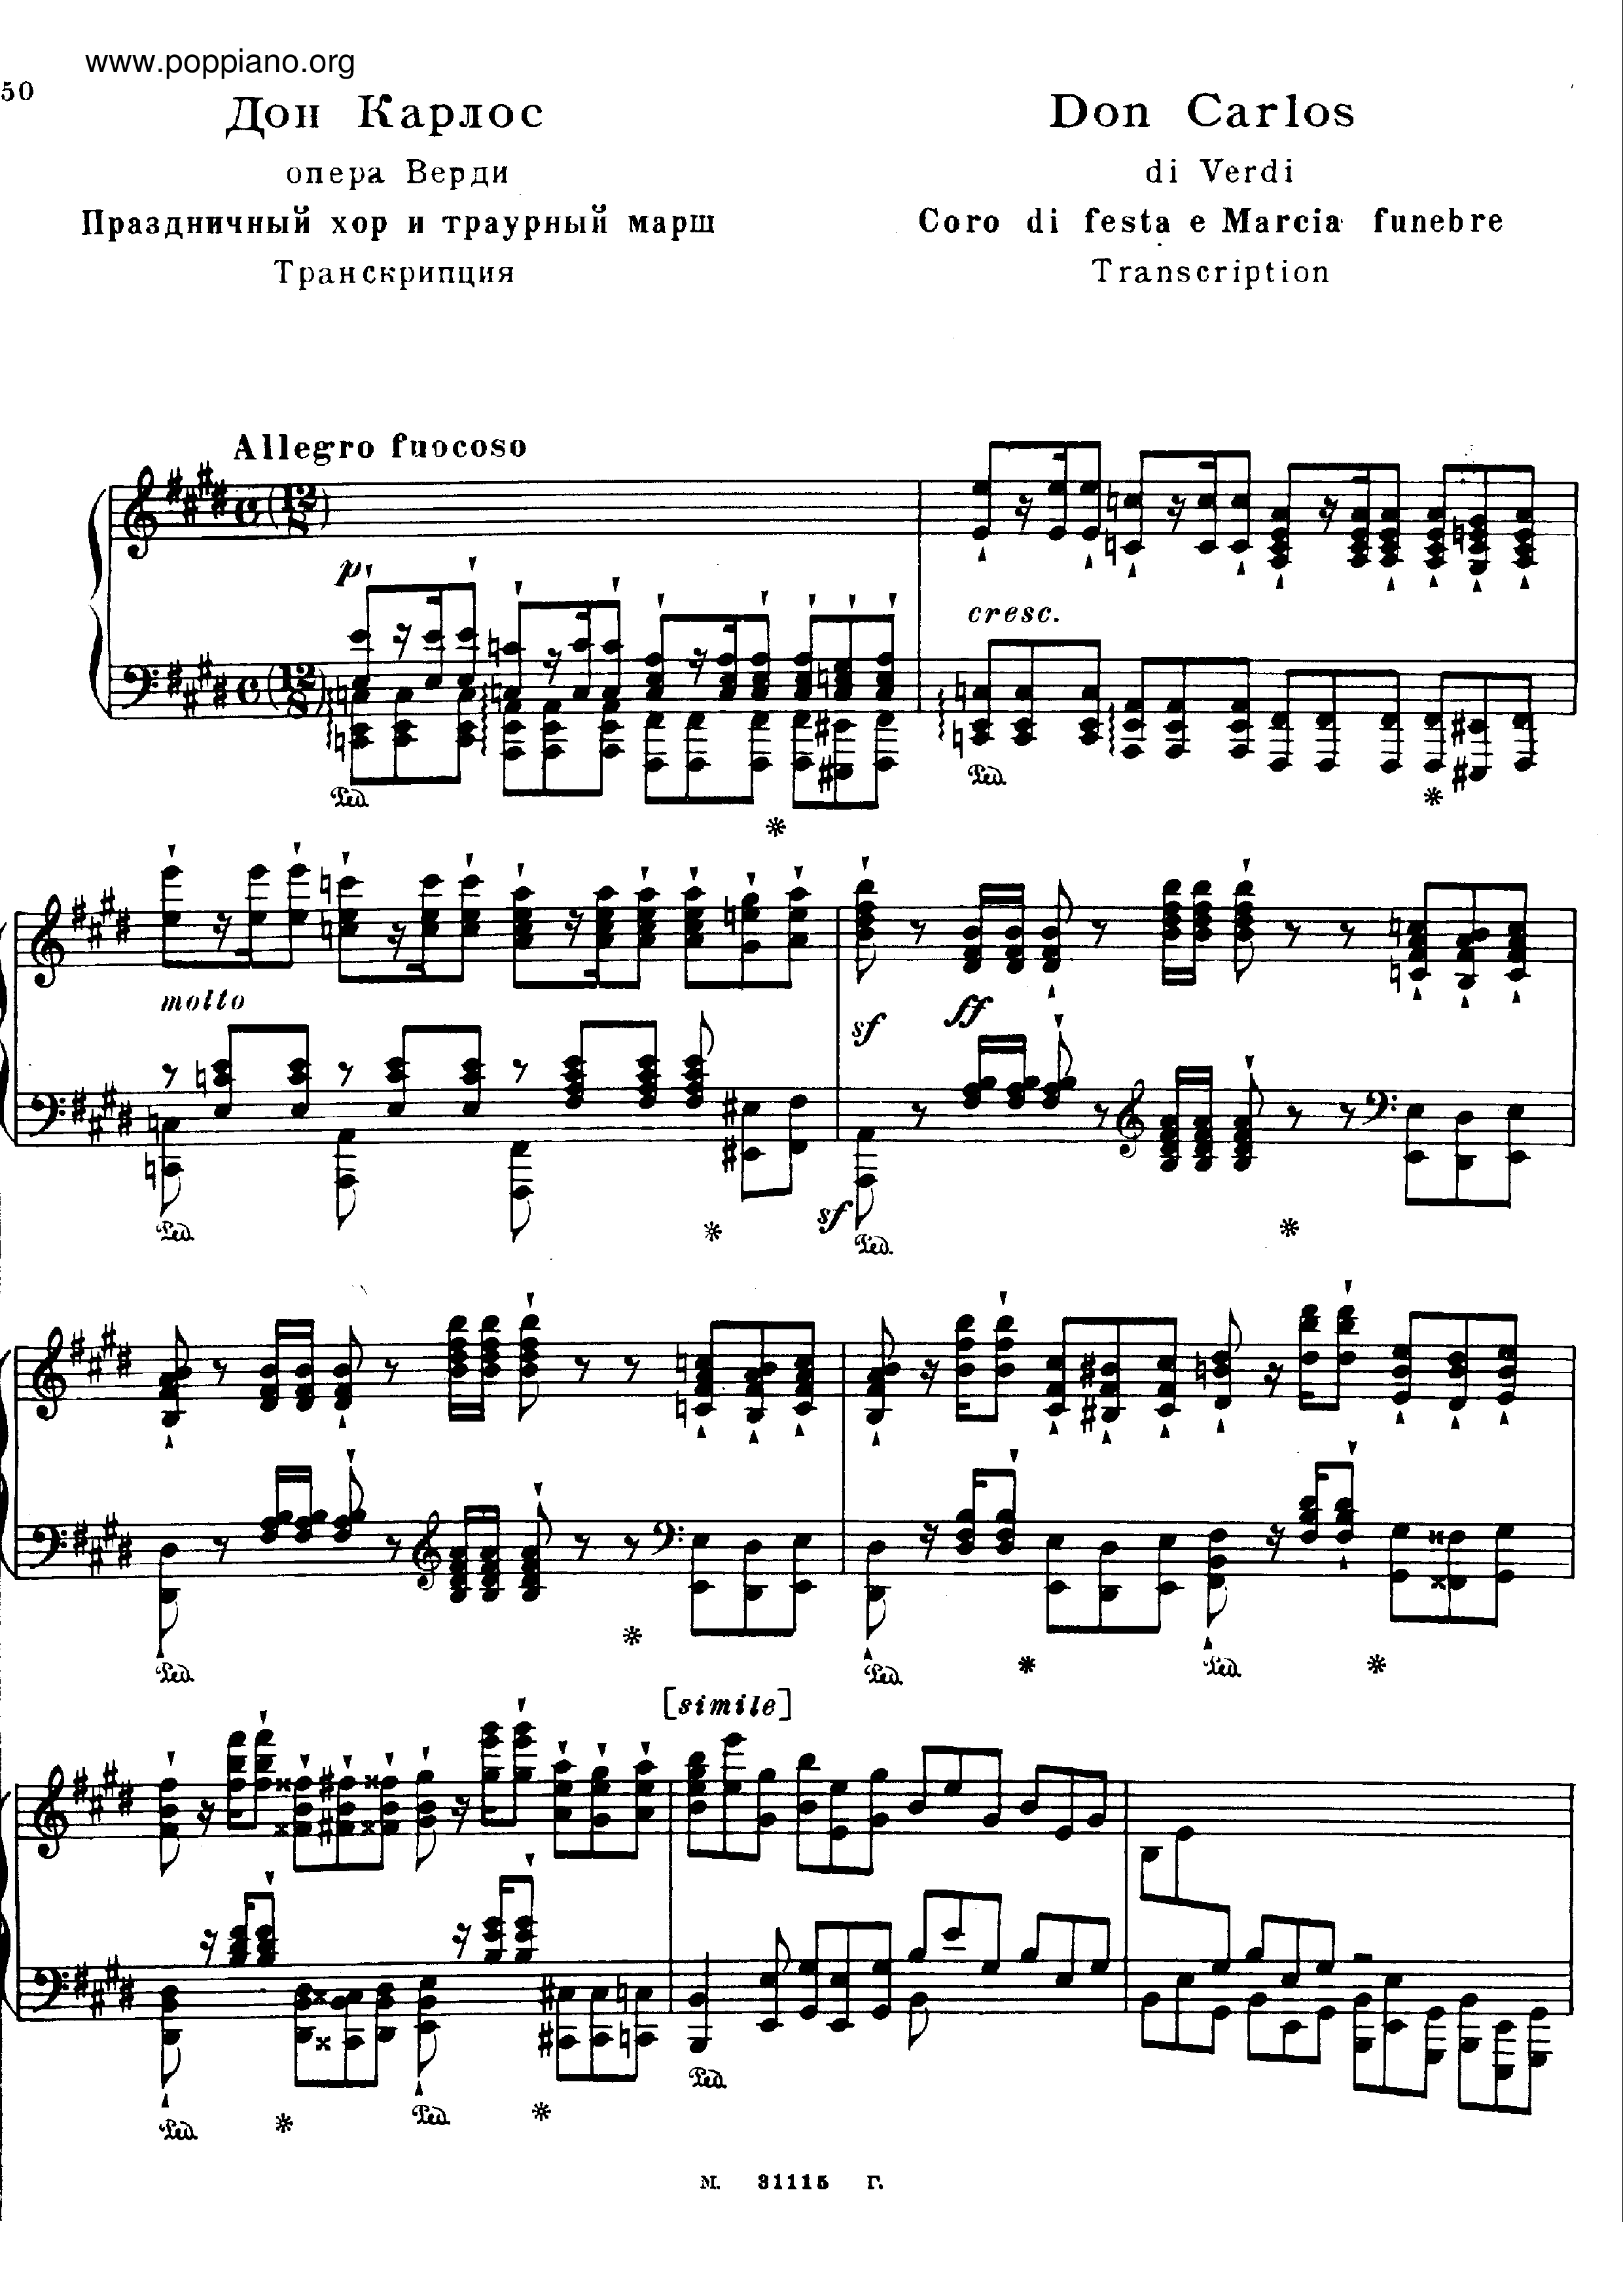 Don Carlos Coro e Marcia Funebre, by Verdi, S.435 Score